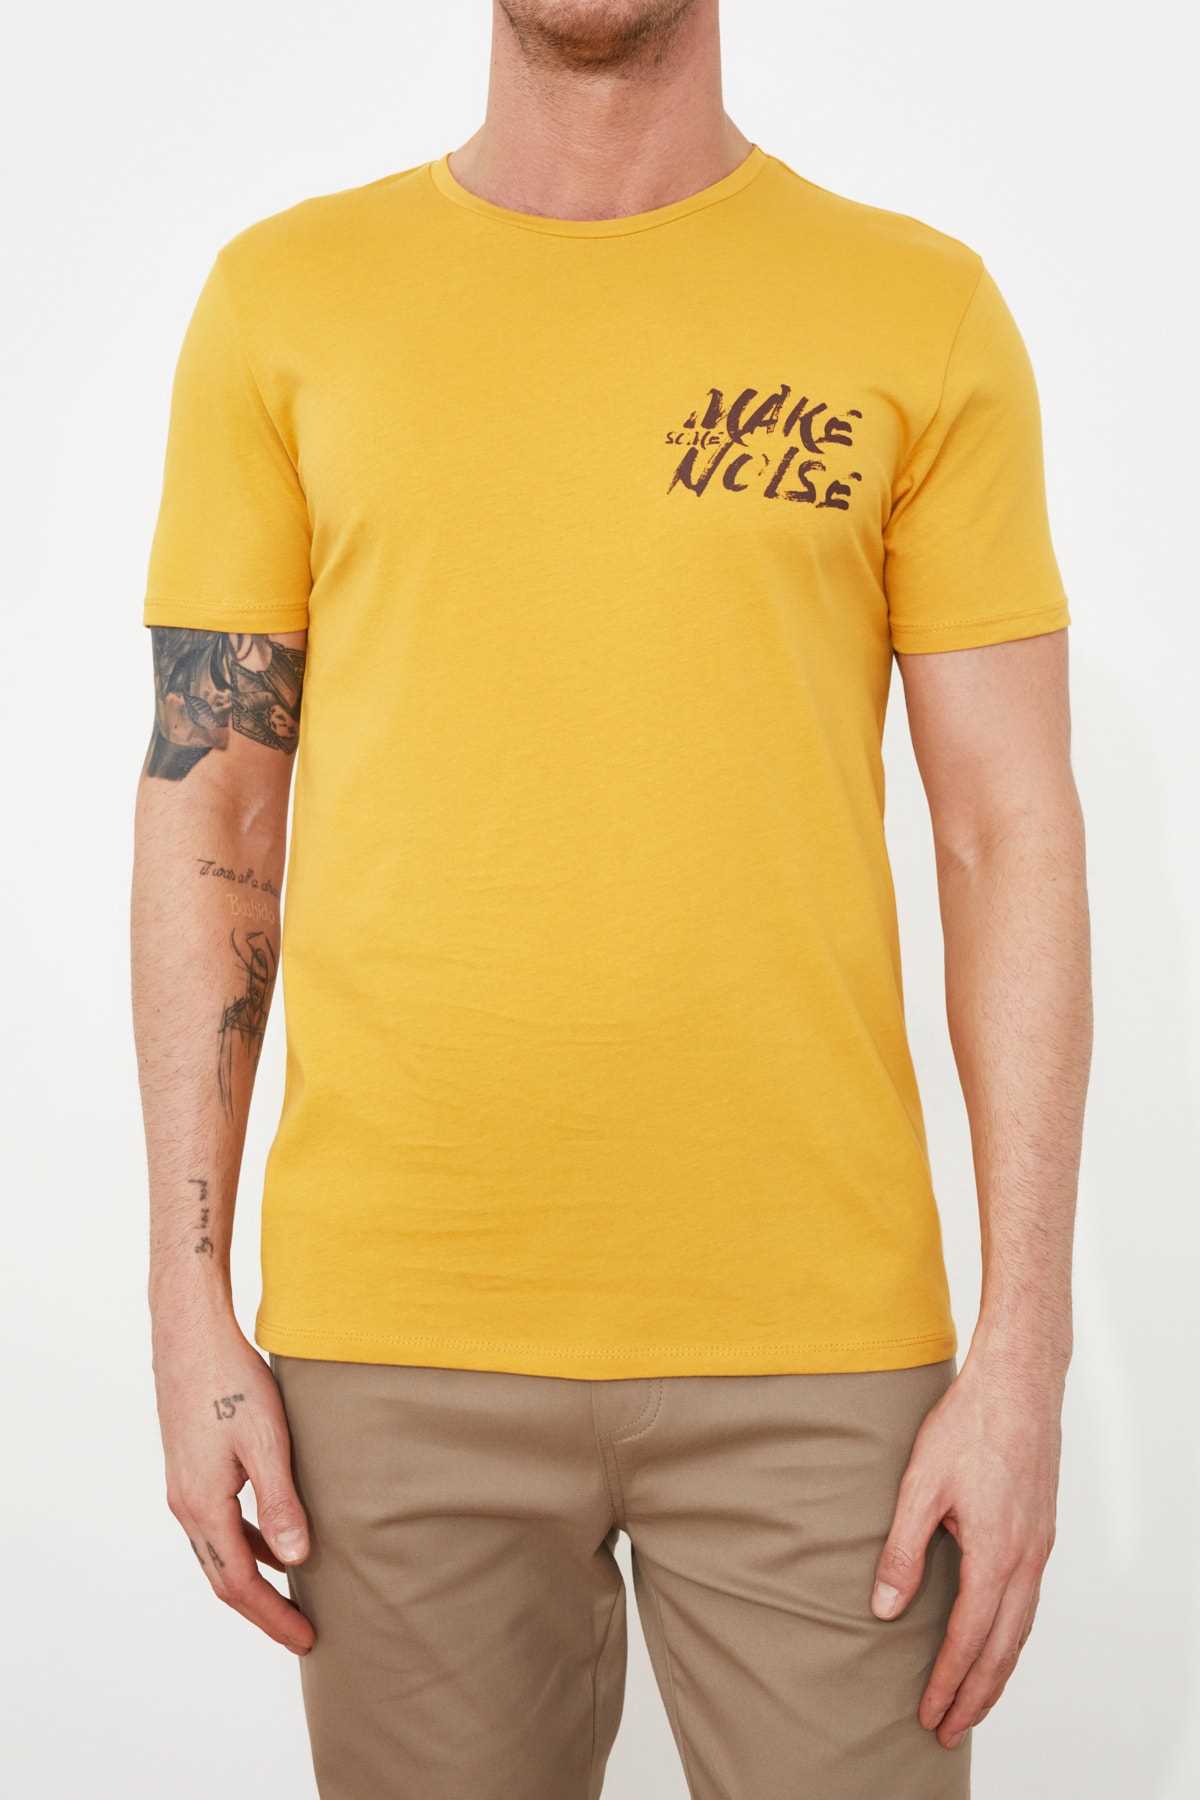 فروشگاه تی شرت مردانه مارک ترندیول مرد رنگ زرد ty85984250